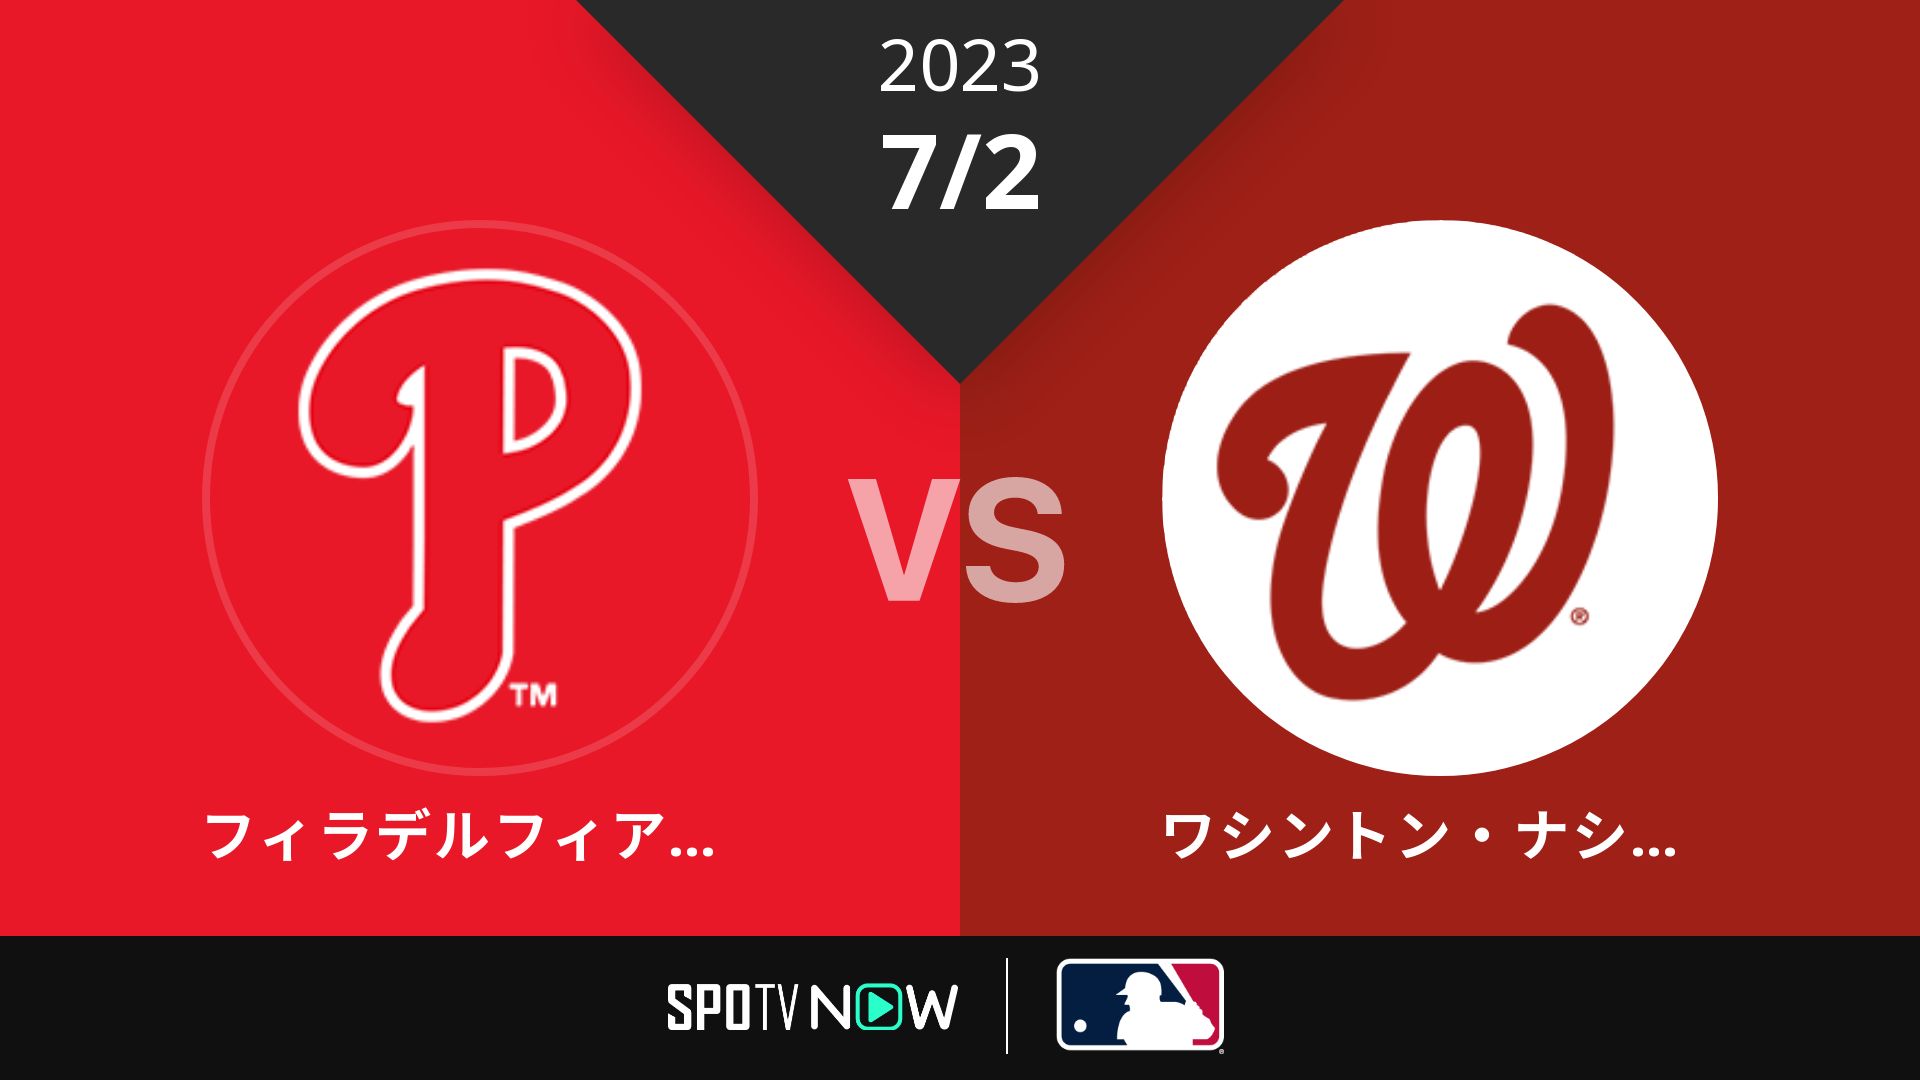 2023/7/2 フィリーズ vs ナショナルズ [MLB]